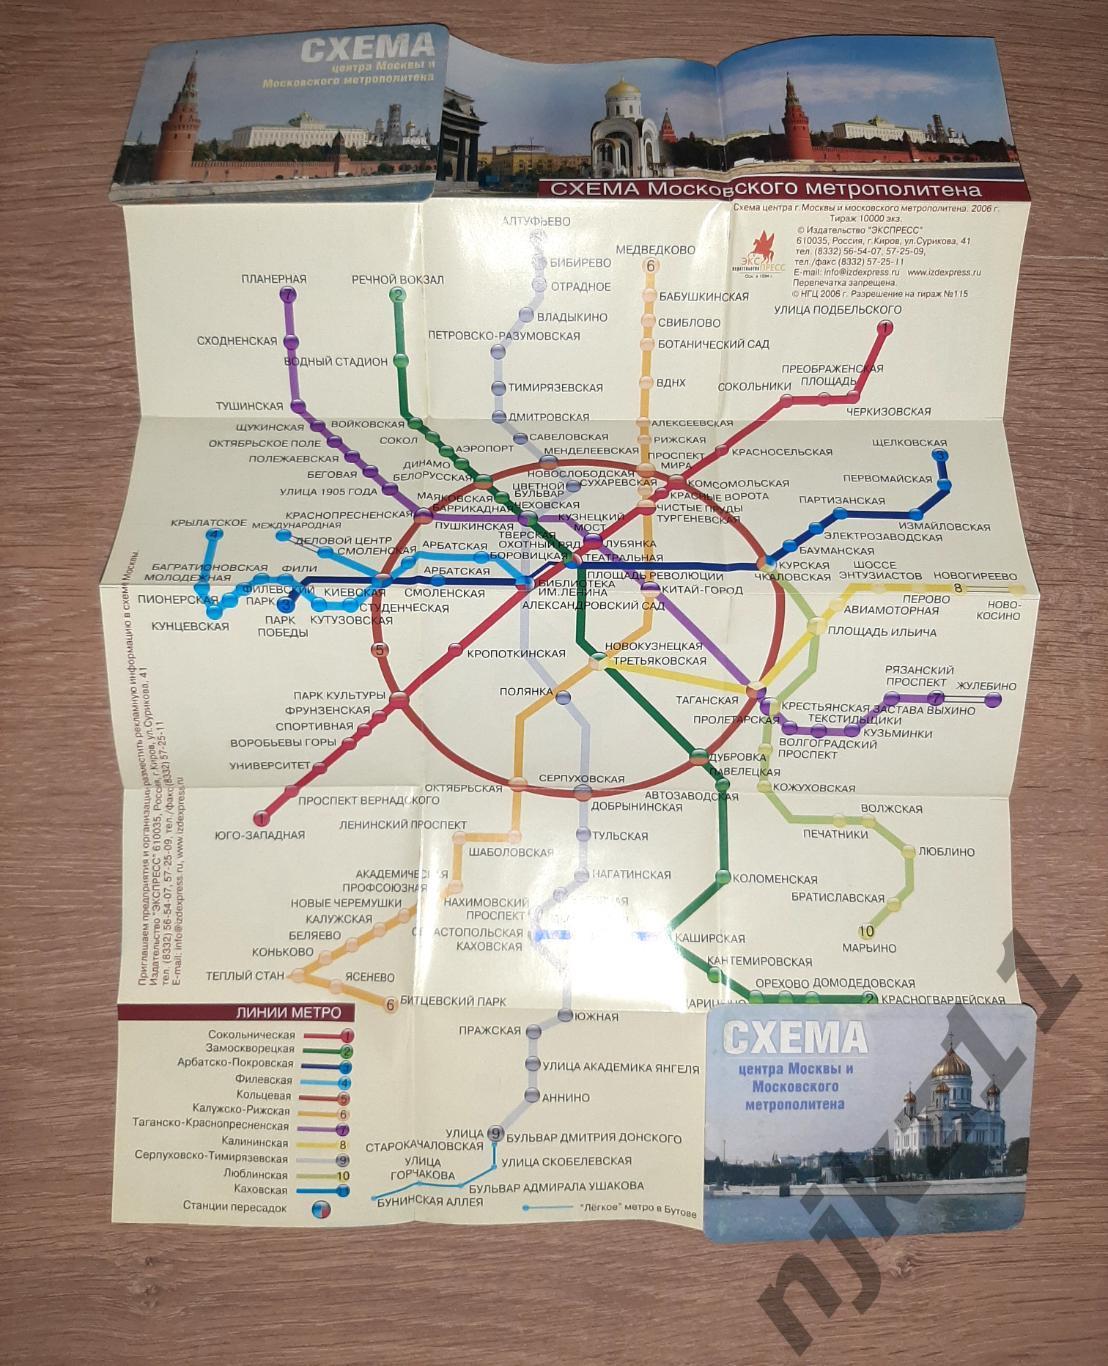 Схема центра Москвы и Московского метрополитена 1